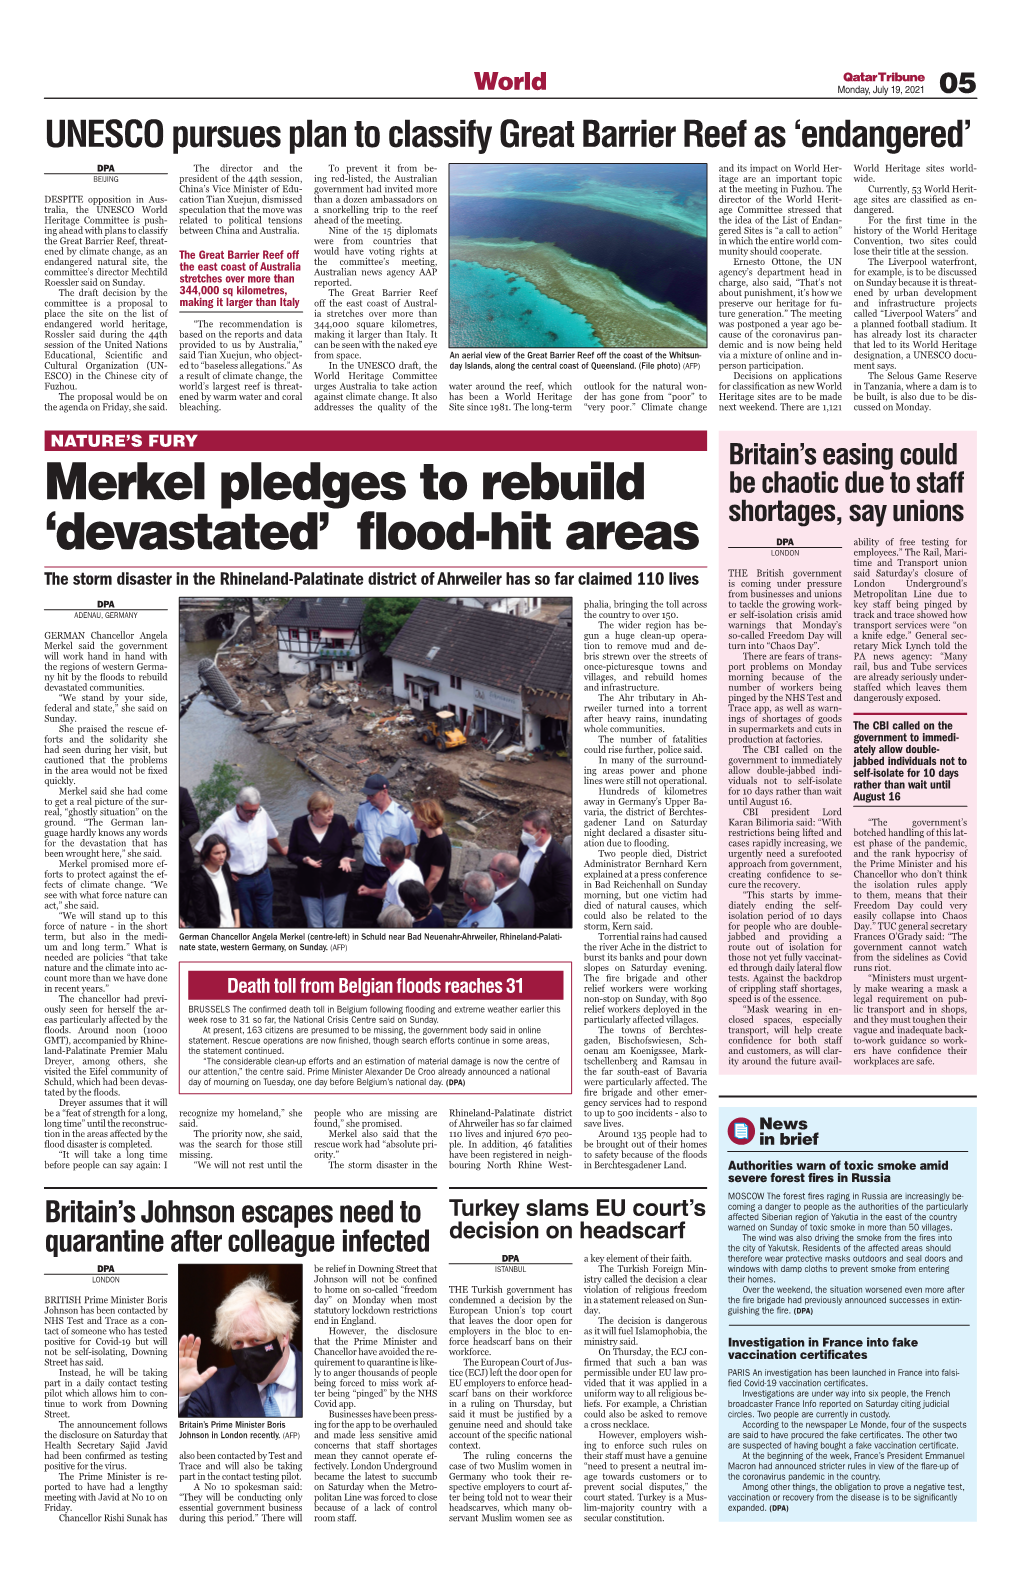 Merkel Pledges to Rebuild 'Devastated' Flood-Hit Areas